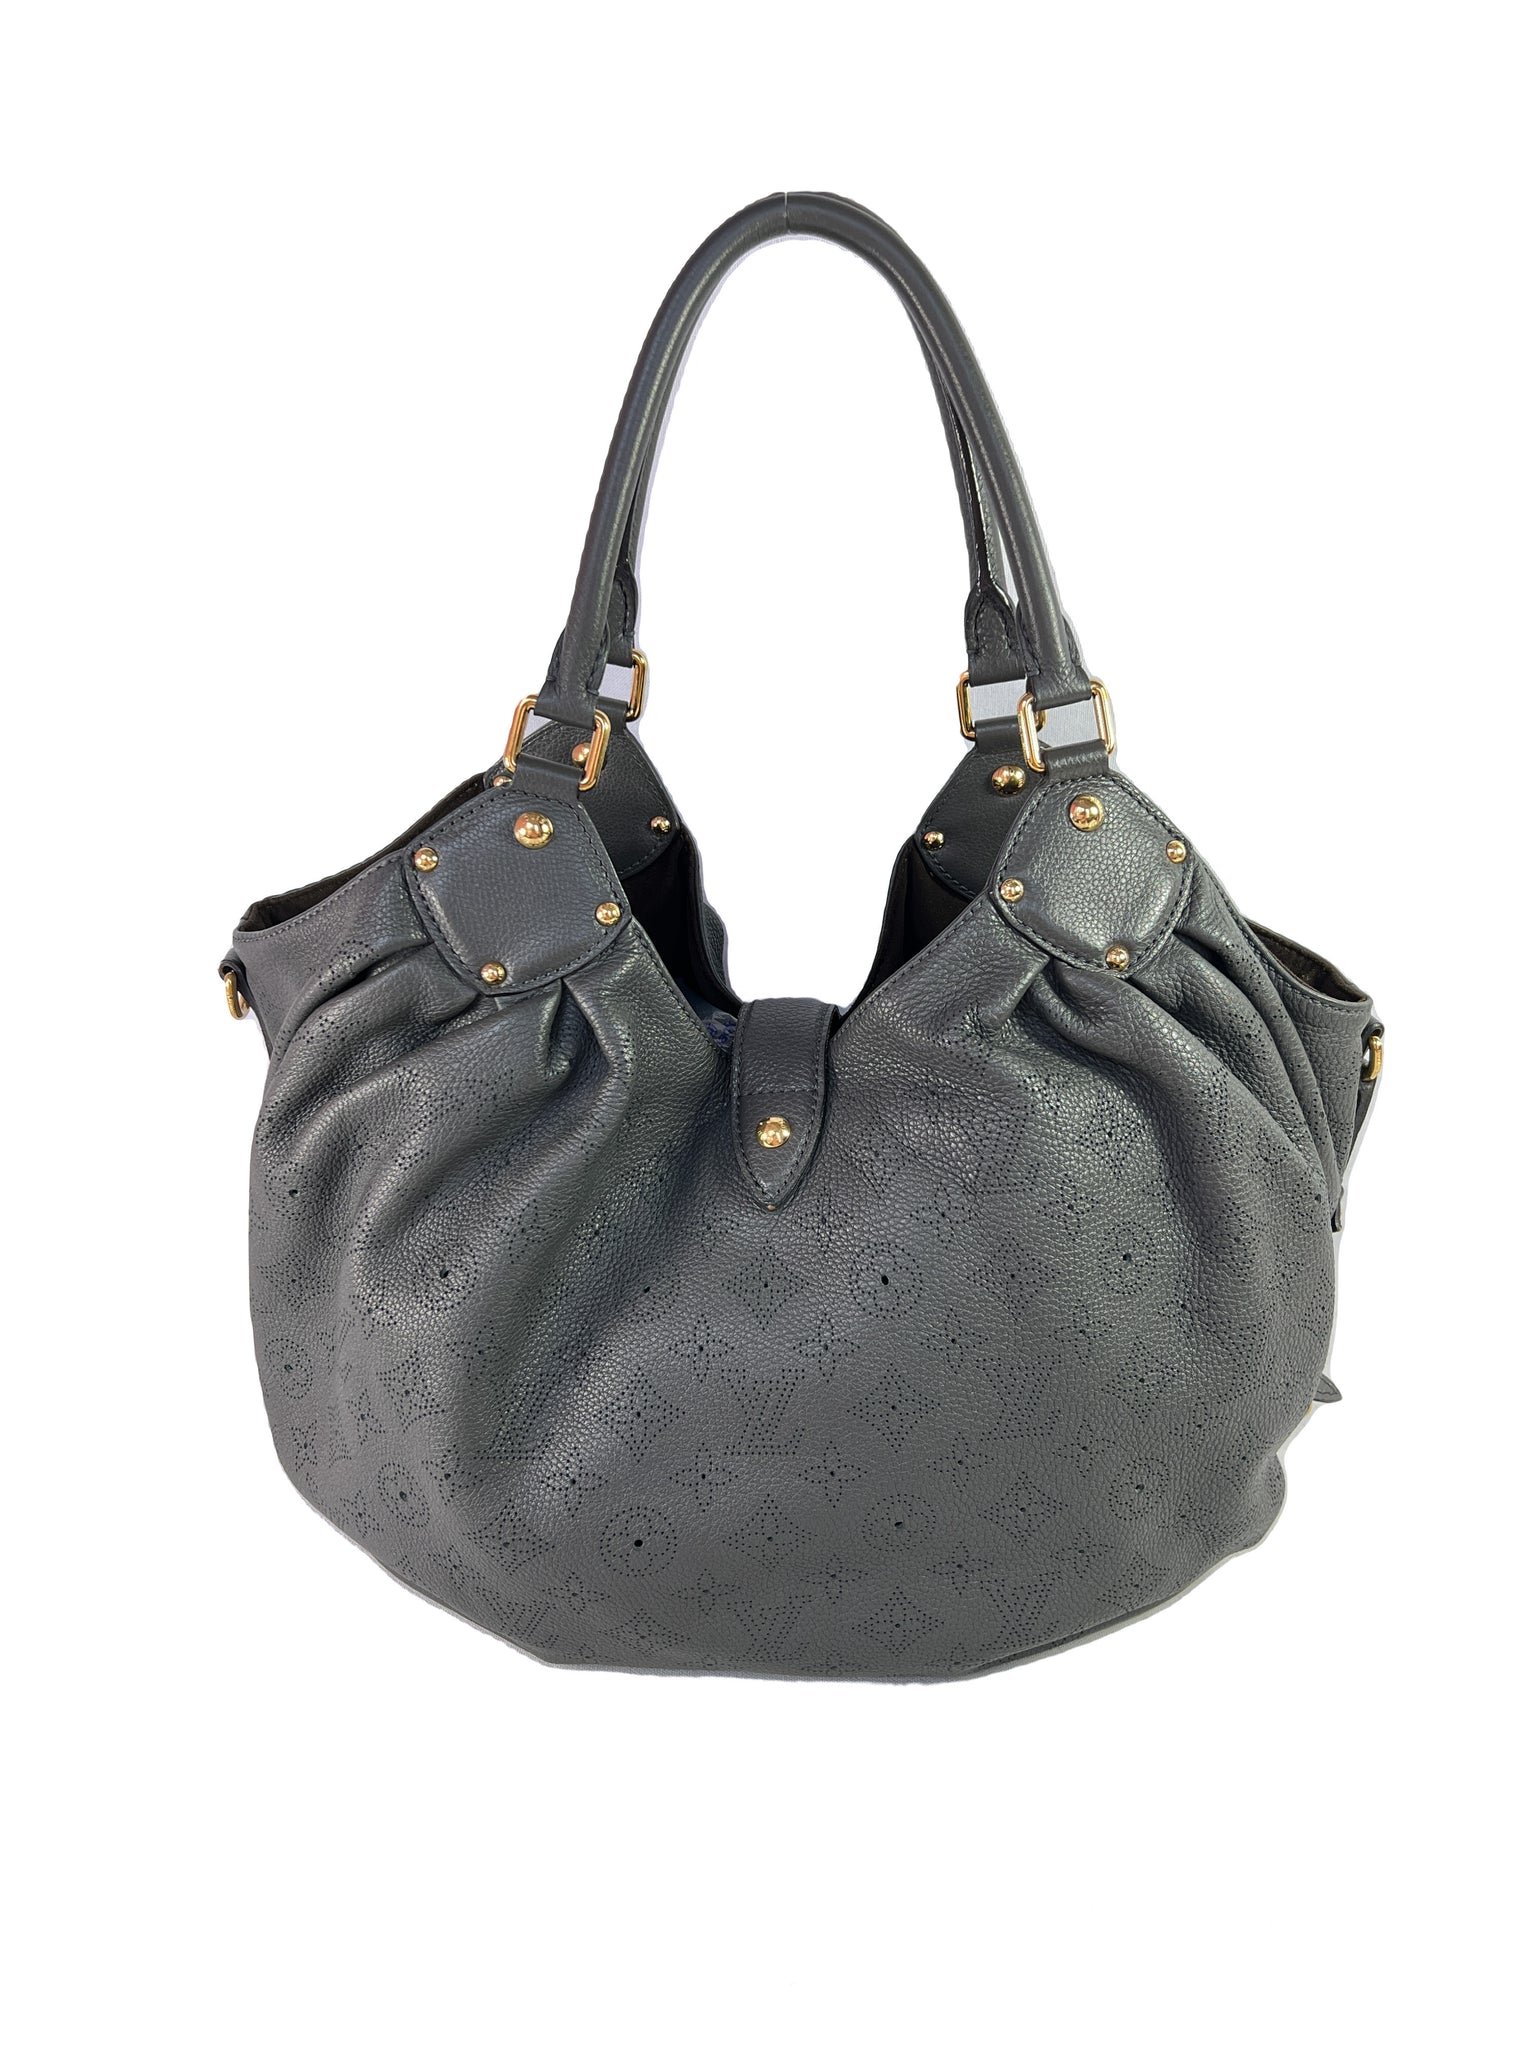 Louis Vuitton blue gray Mahina hobo shoulder bag – My Girlfriend's